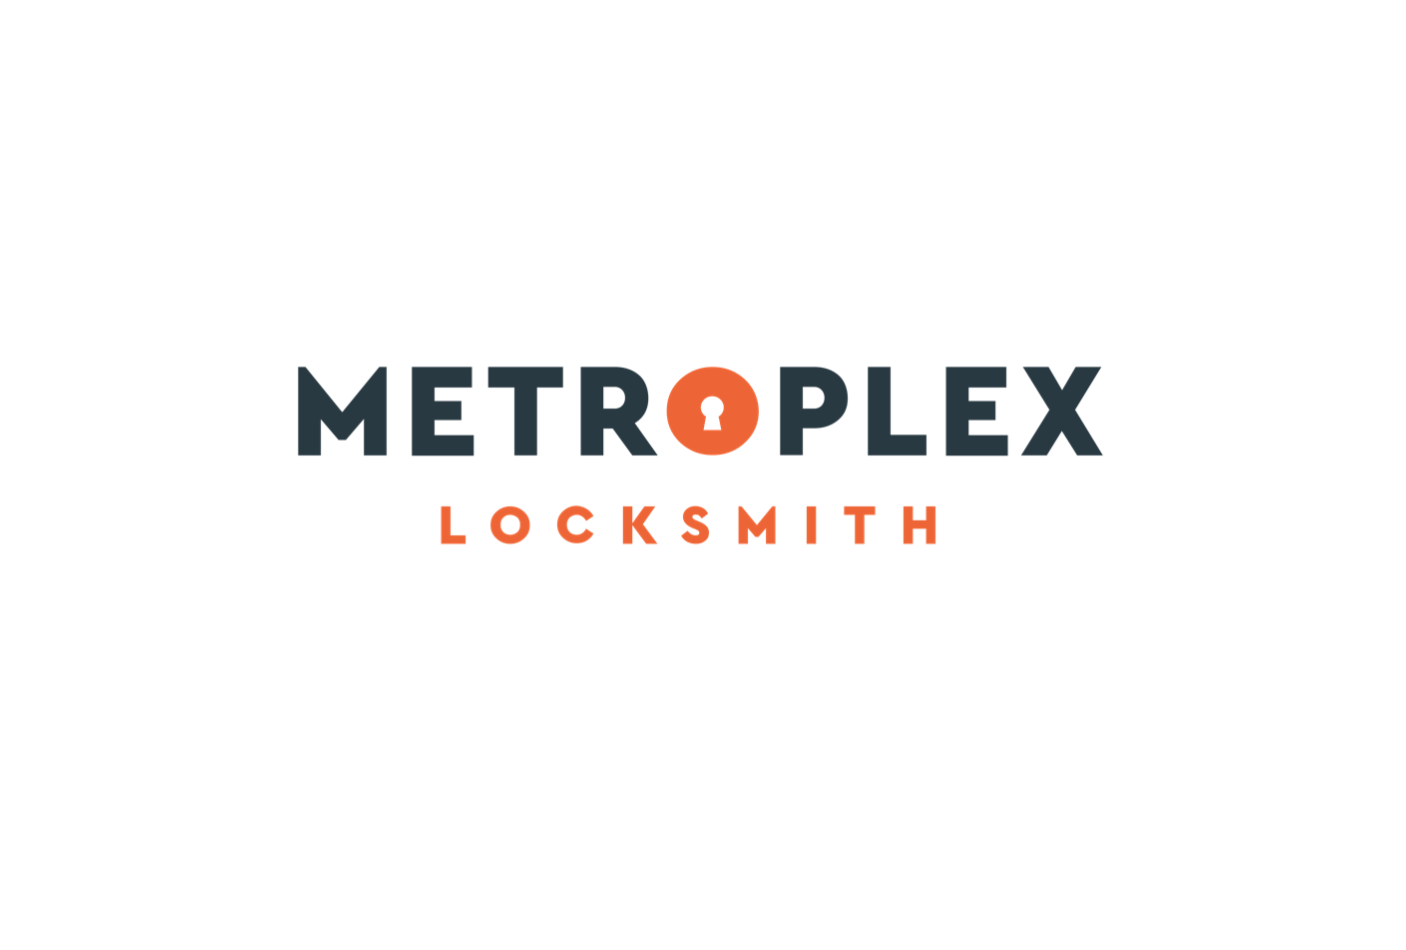 Metroplex Locksmith